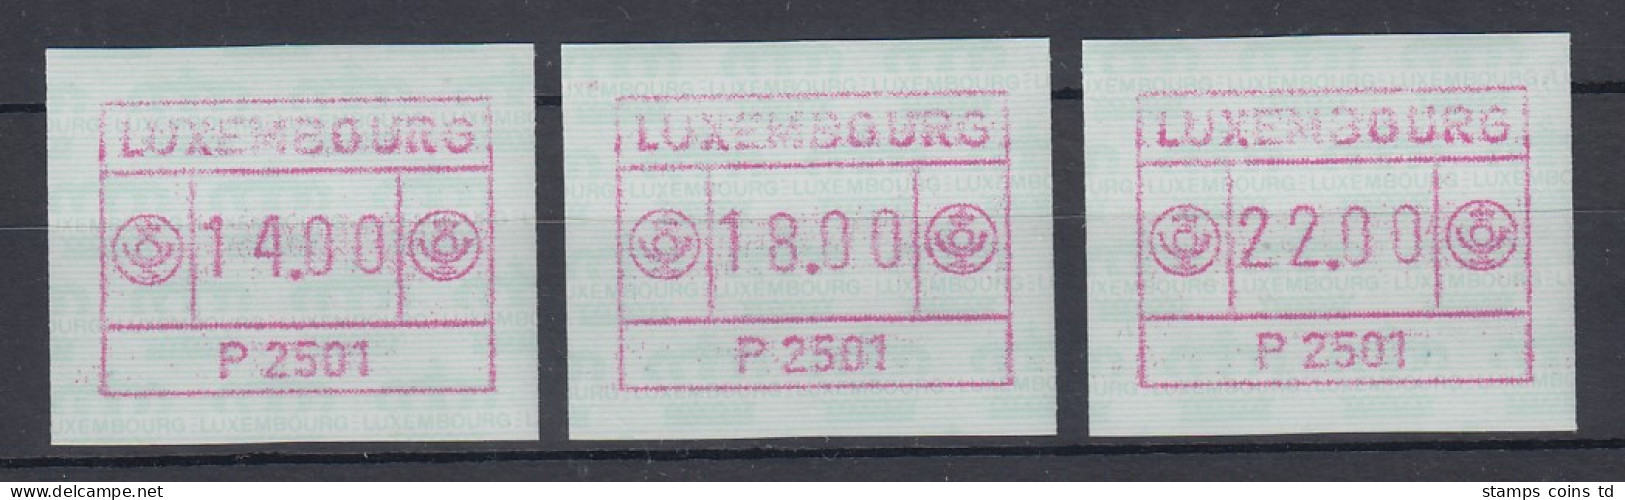 Luxemburg ATM P2501 Rotlila Tastensatz 14-18-22 **   - Automatenmarken